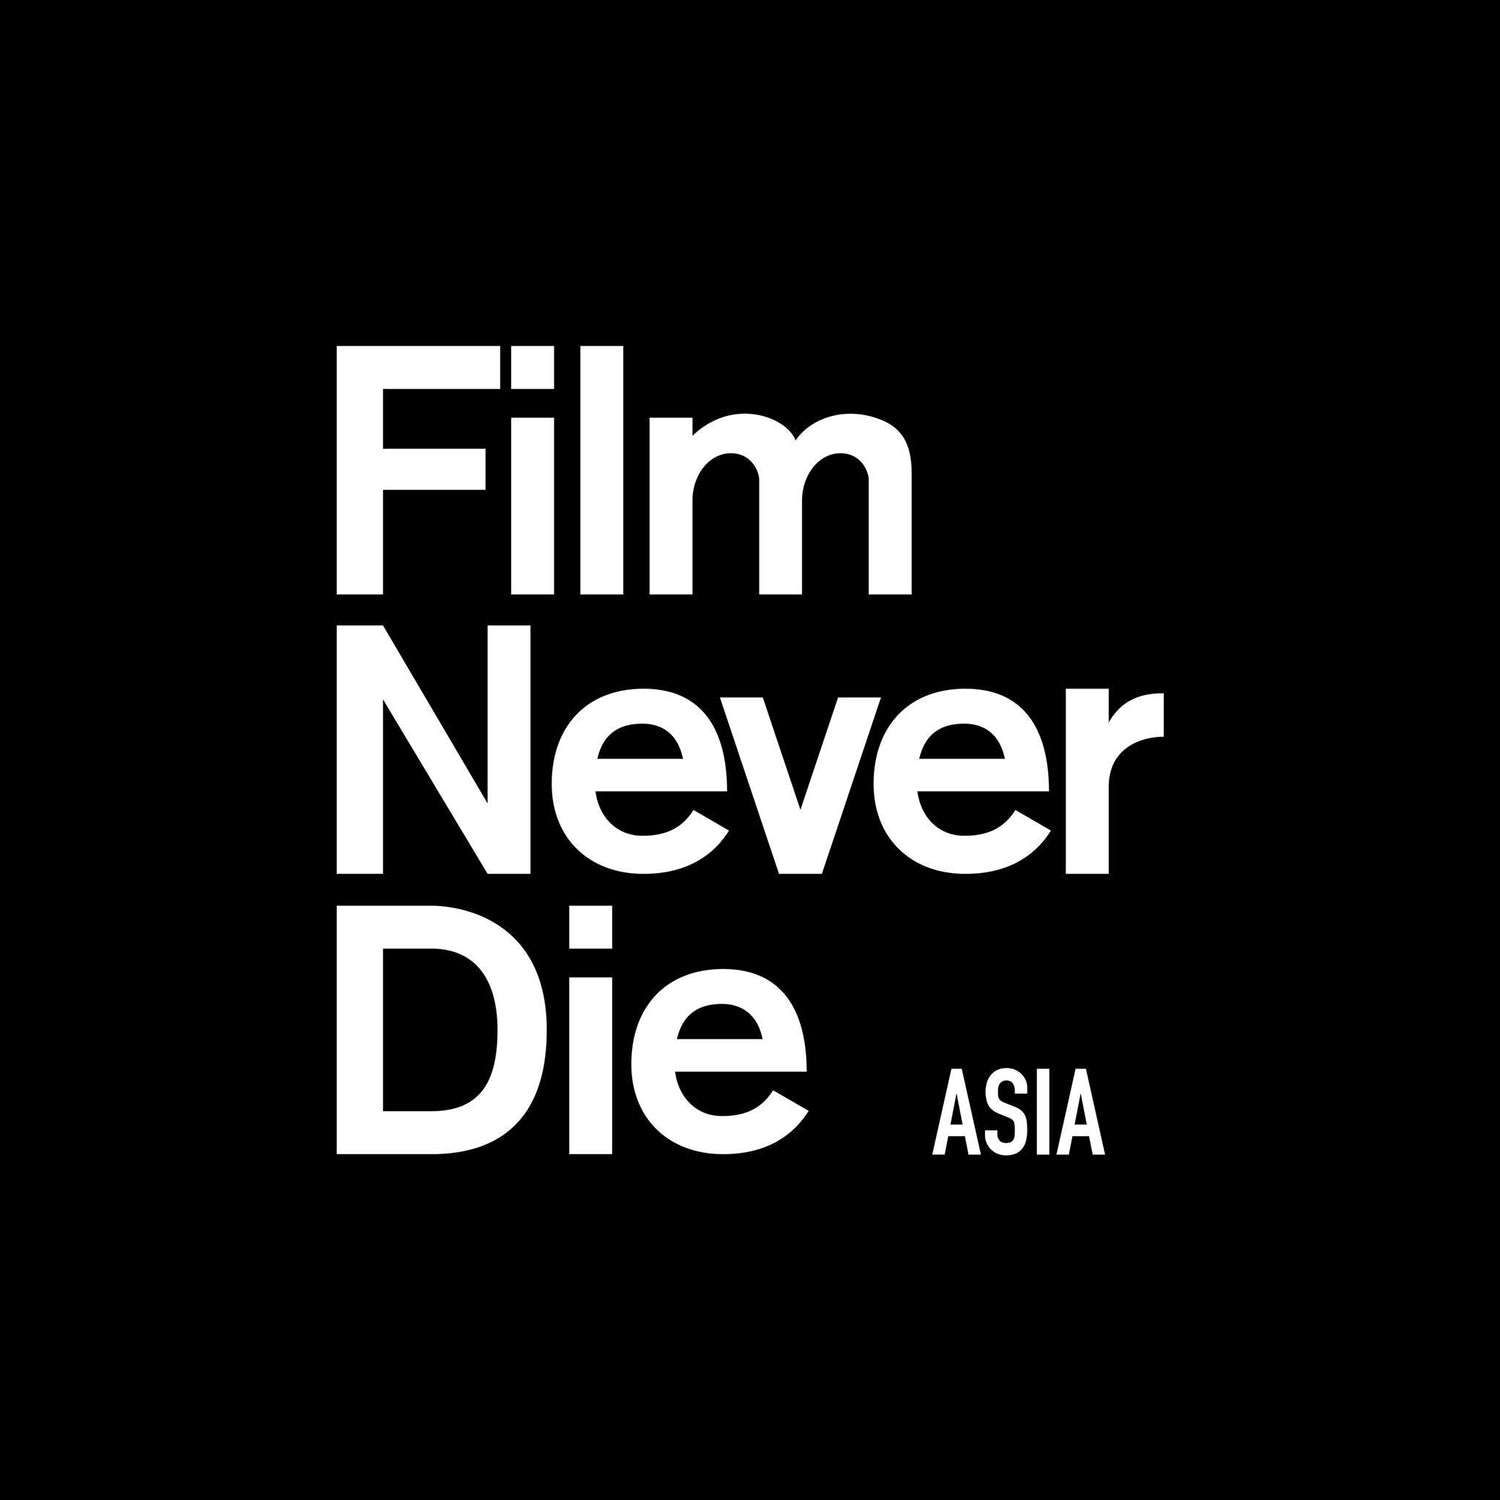 FilmNeverDie.Asia